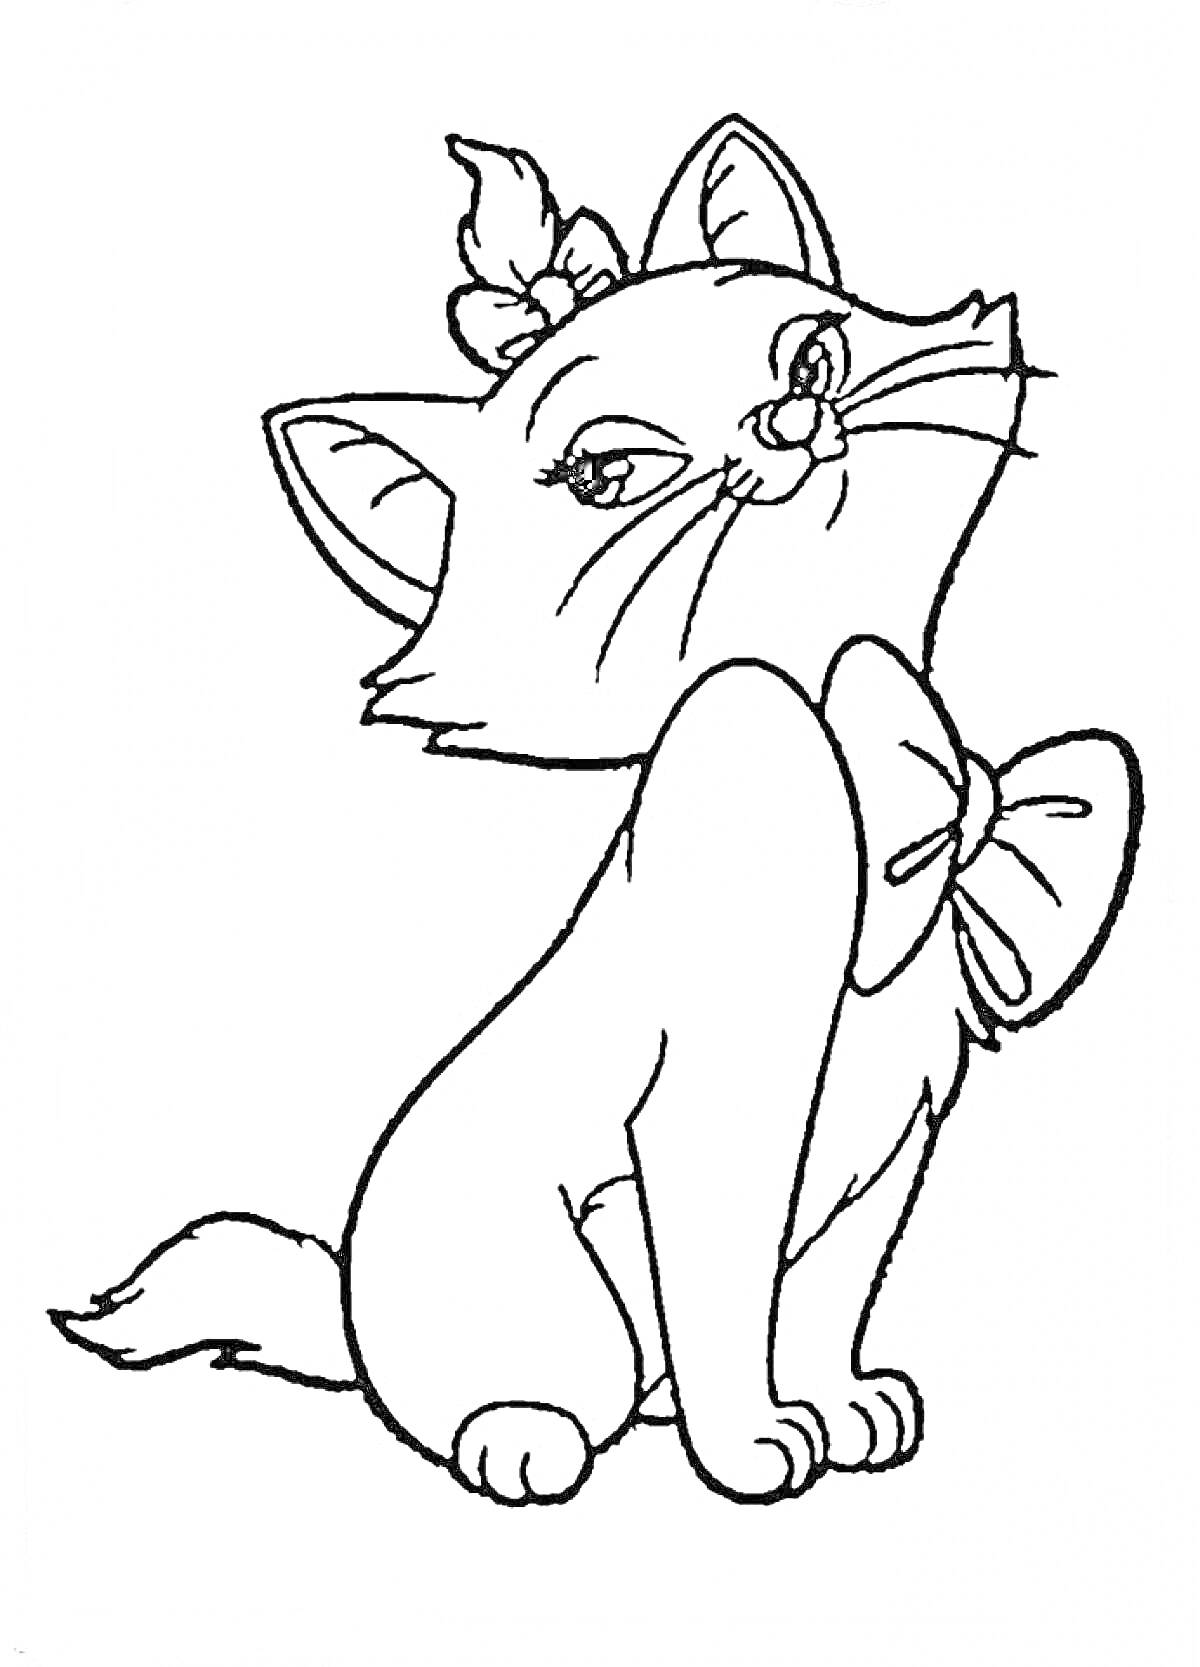 Раскраска Кошка Мари с бантом на шее и хвостом, украшенным бантом